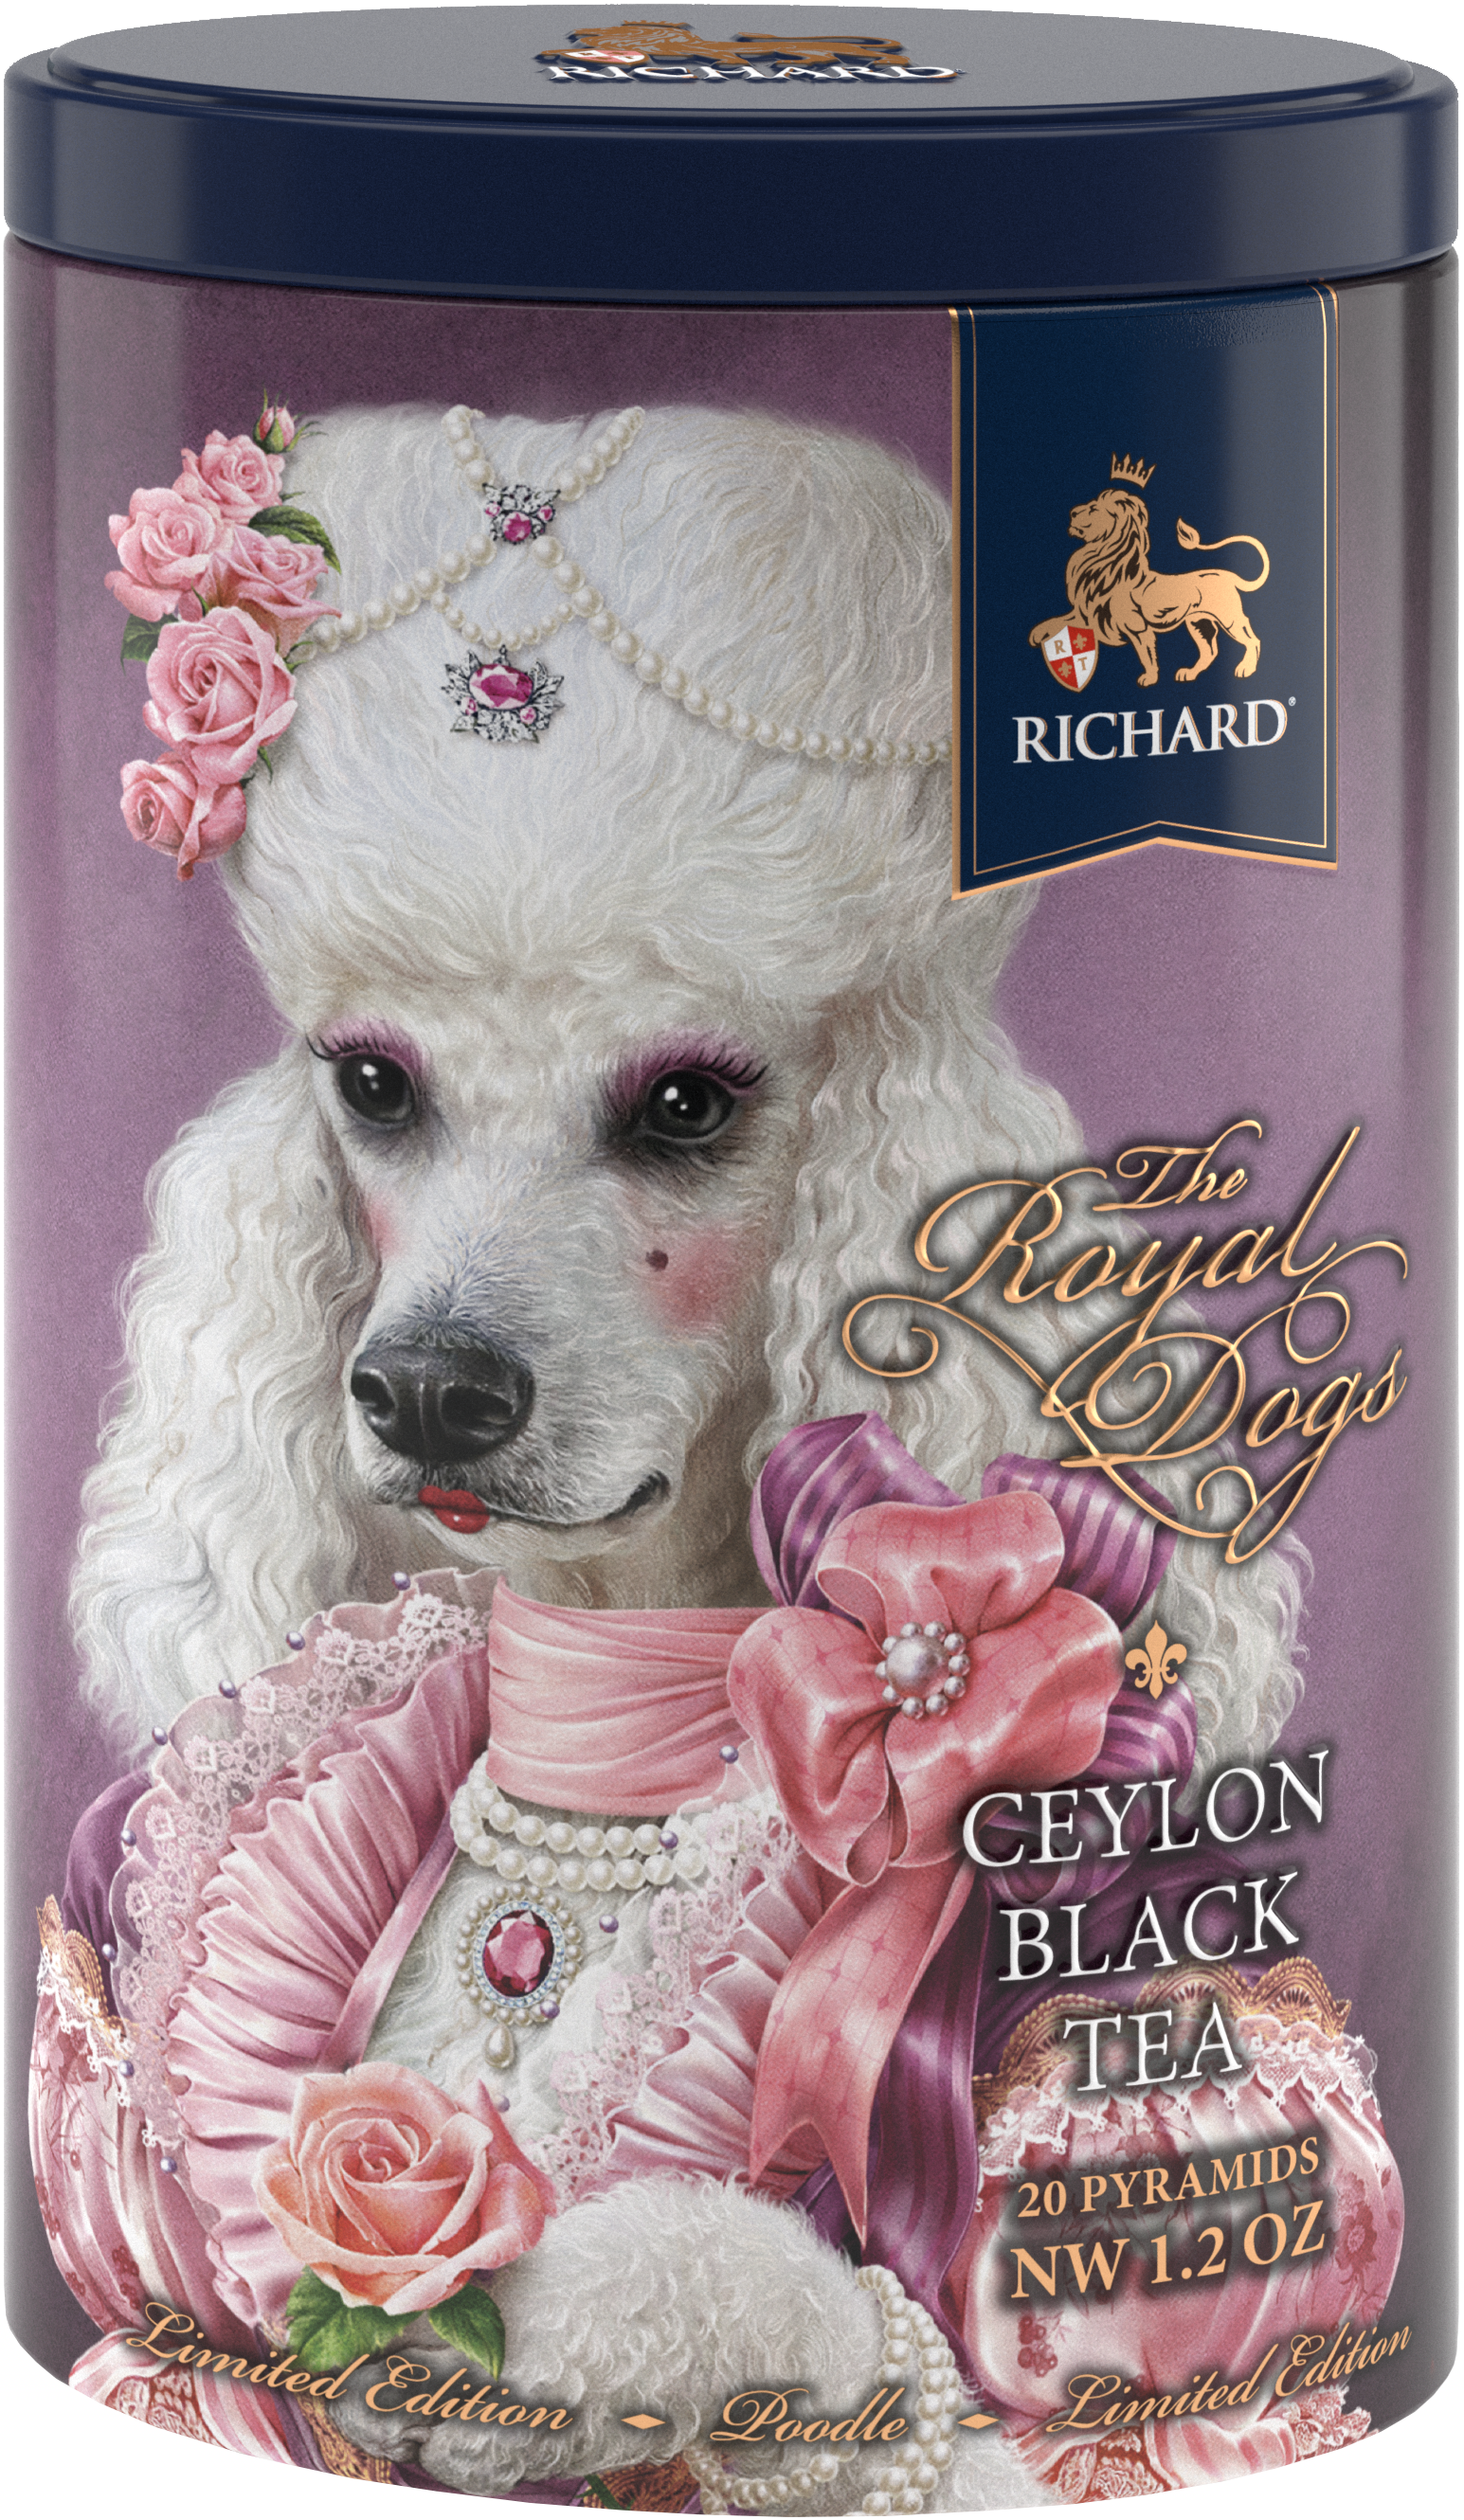 Richard Royal kutyák, fekete tea, 34g, 20 piramis-filter, Uszkár - RichardTeavn - vásároljon a 2990.00 Ft